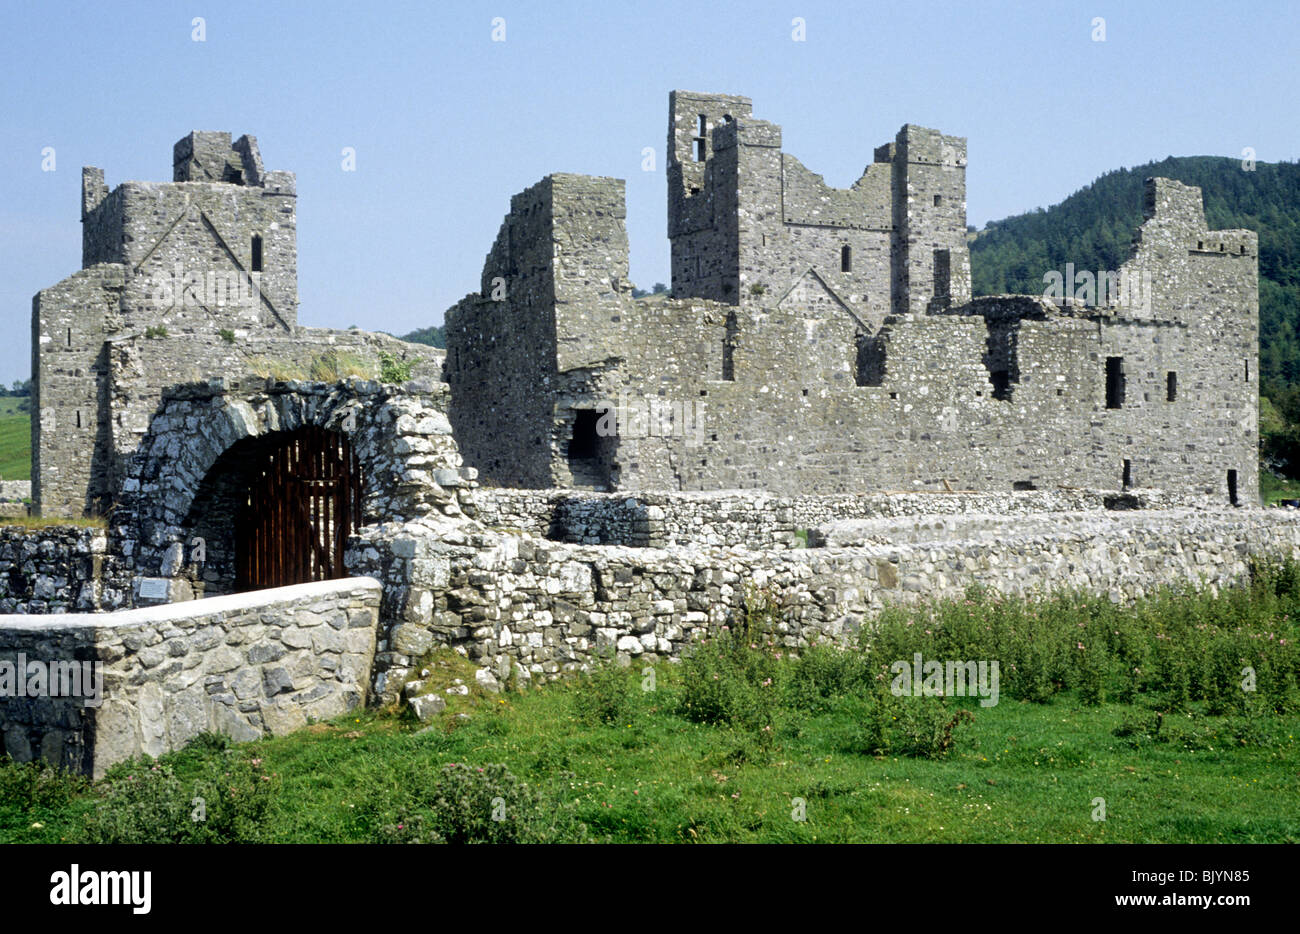 Fore Abbey, Condado de Westmeath, Irlanda Eire Irish abadías arruinadas monasterios benedictinos ruina ruinas monásticas medievales Foto de stock